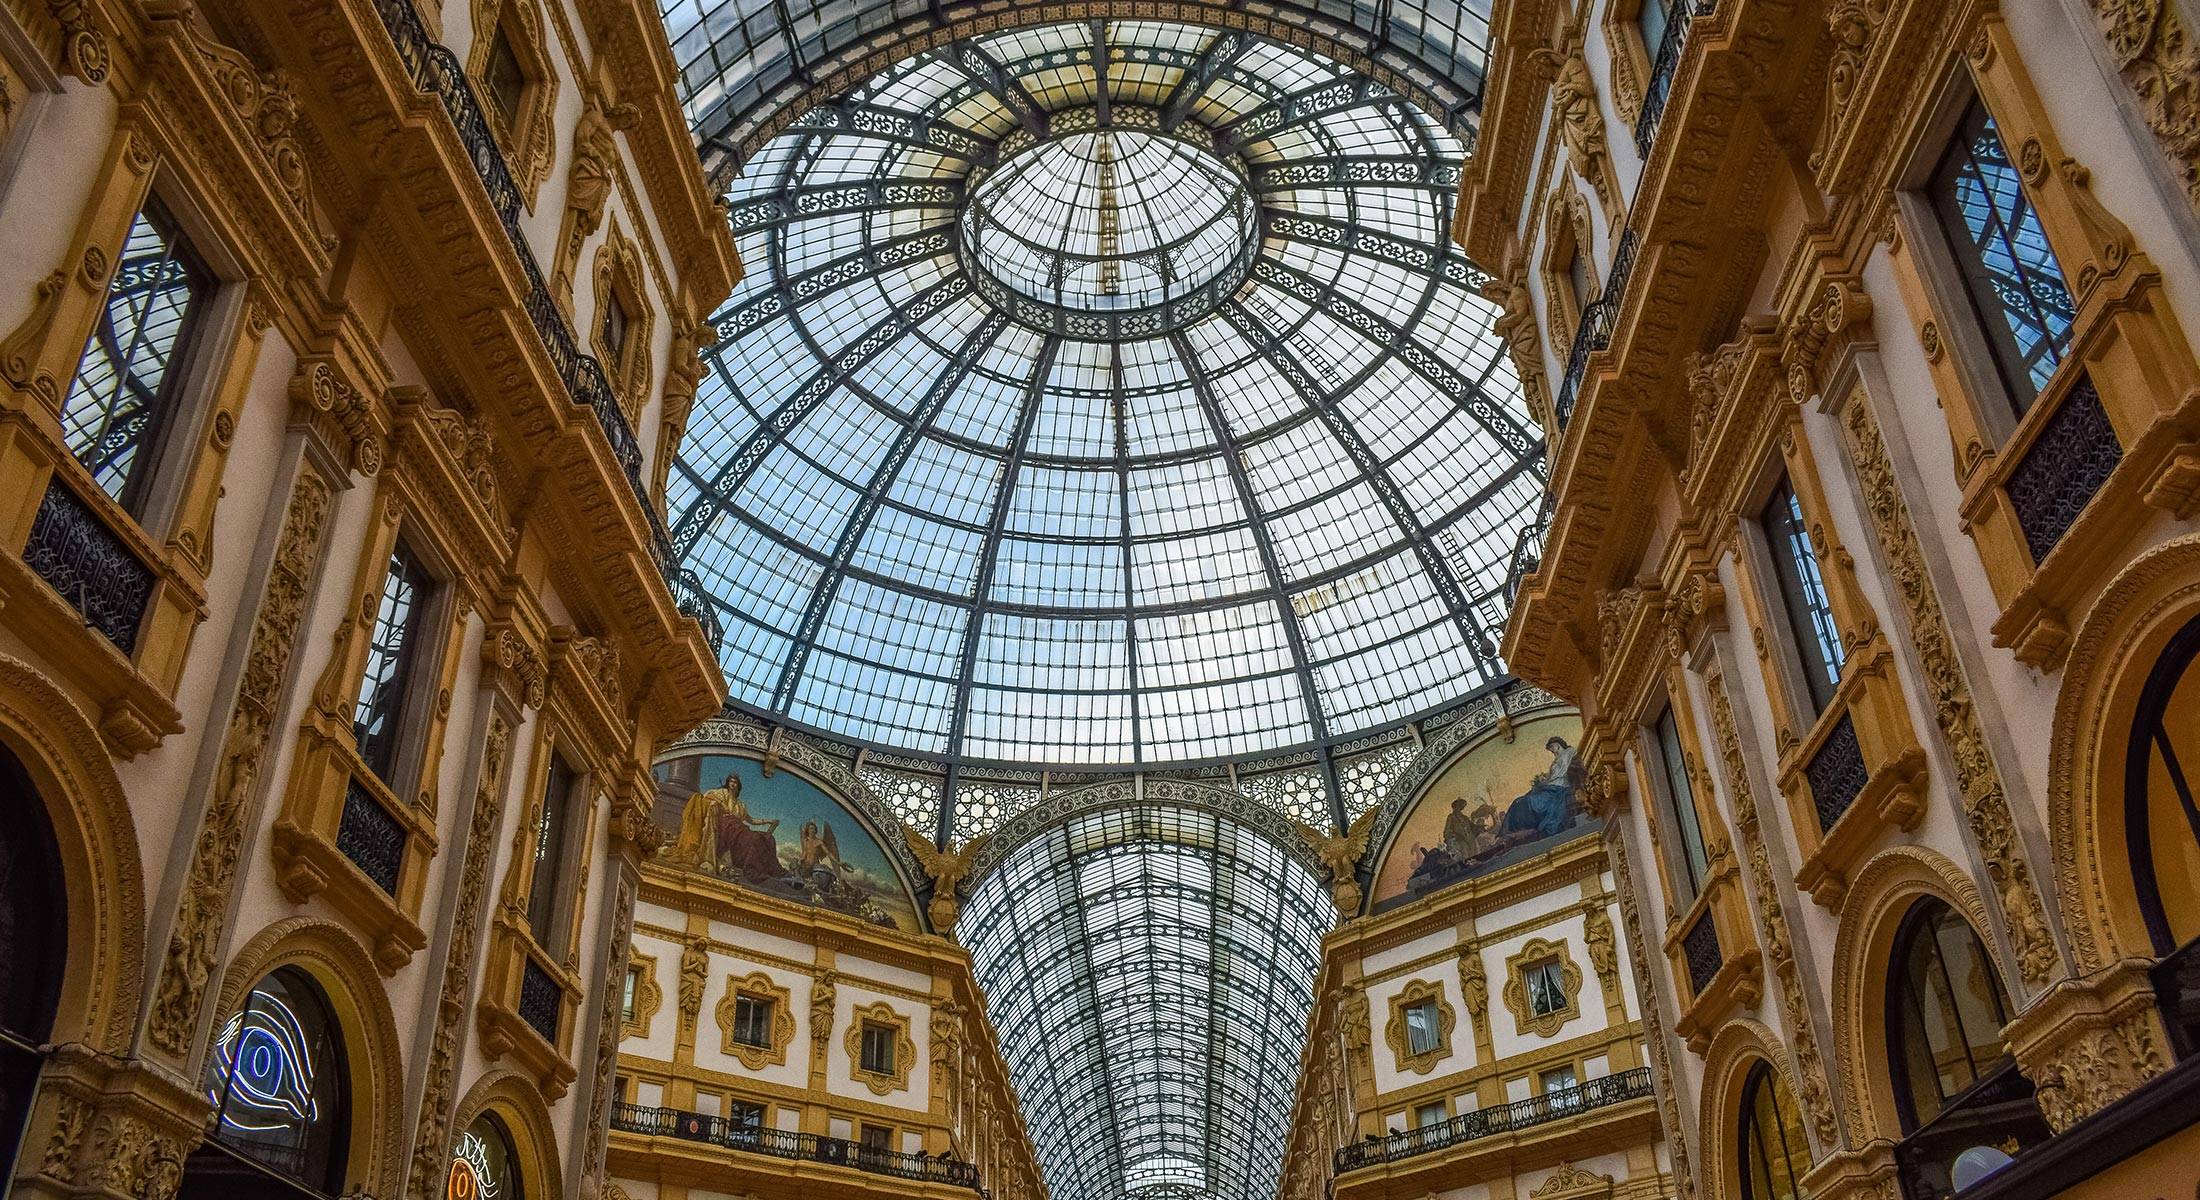 Galleria Vittorio Emanuele II  Galleria Vittorio Emanuele II